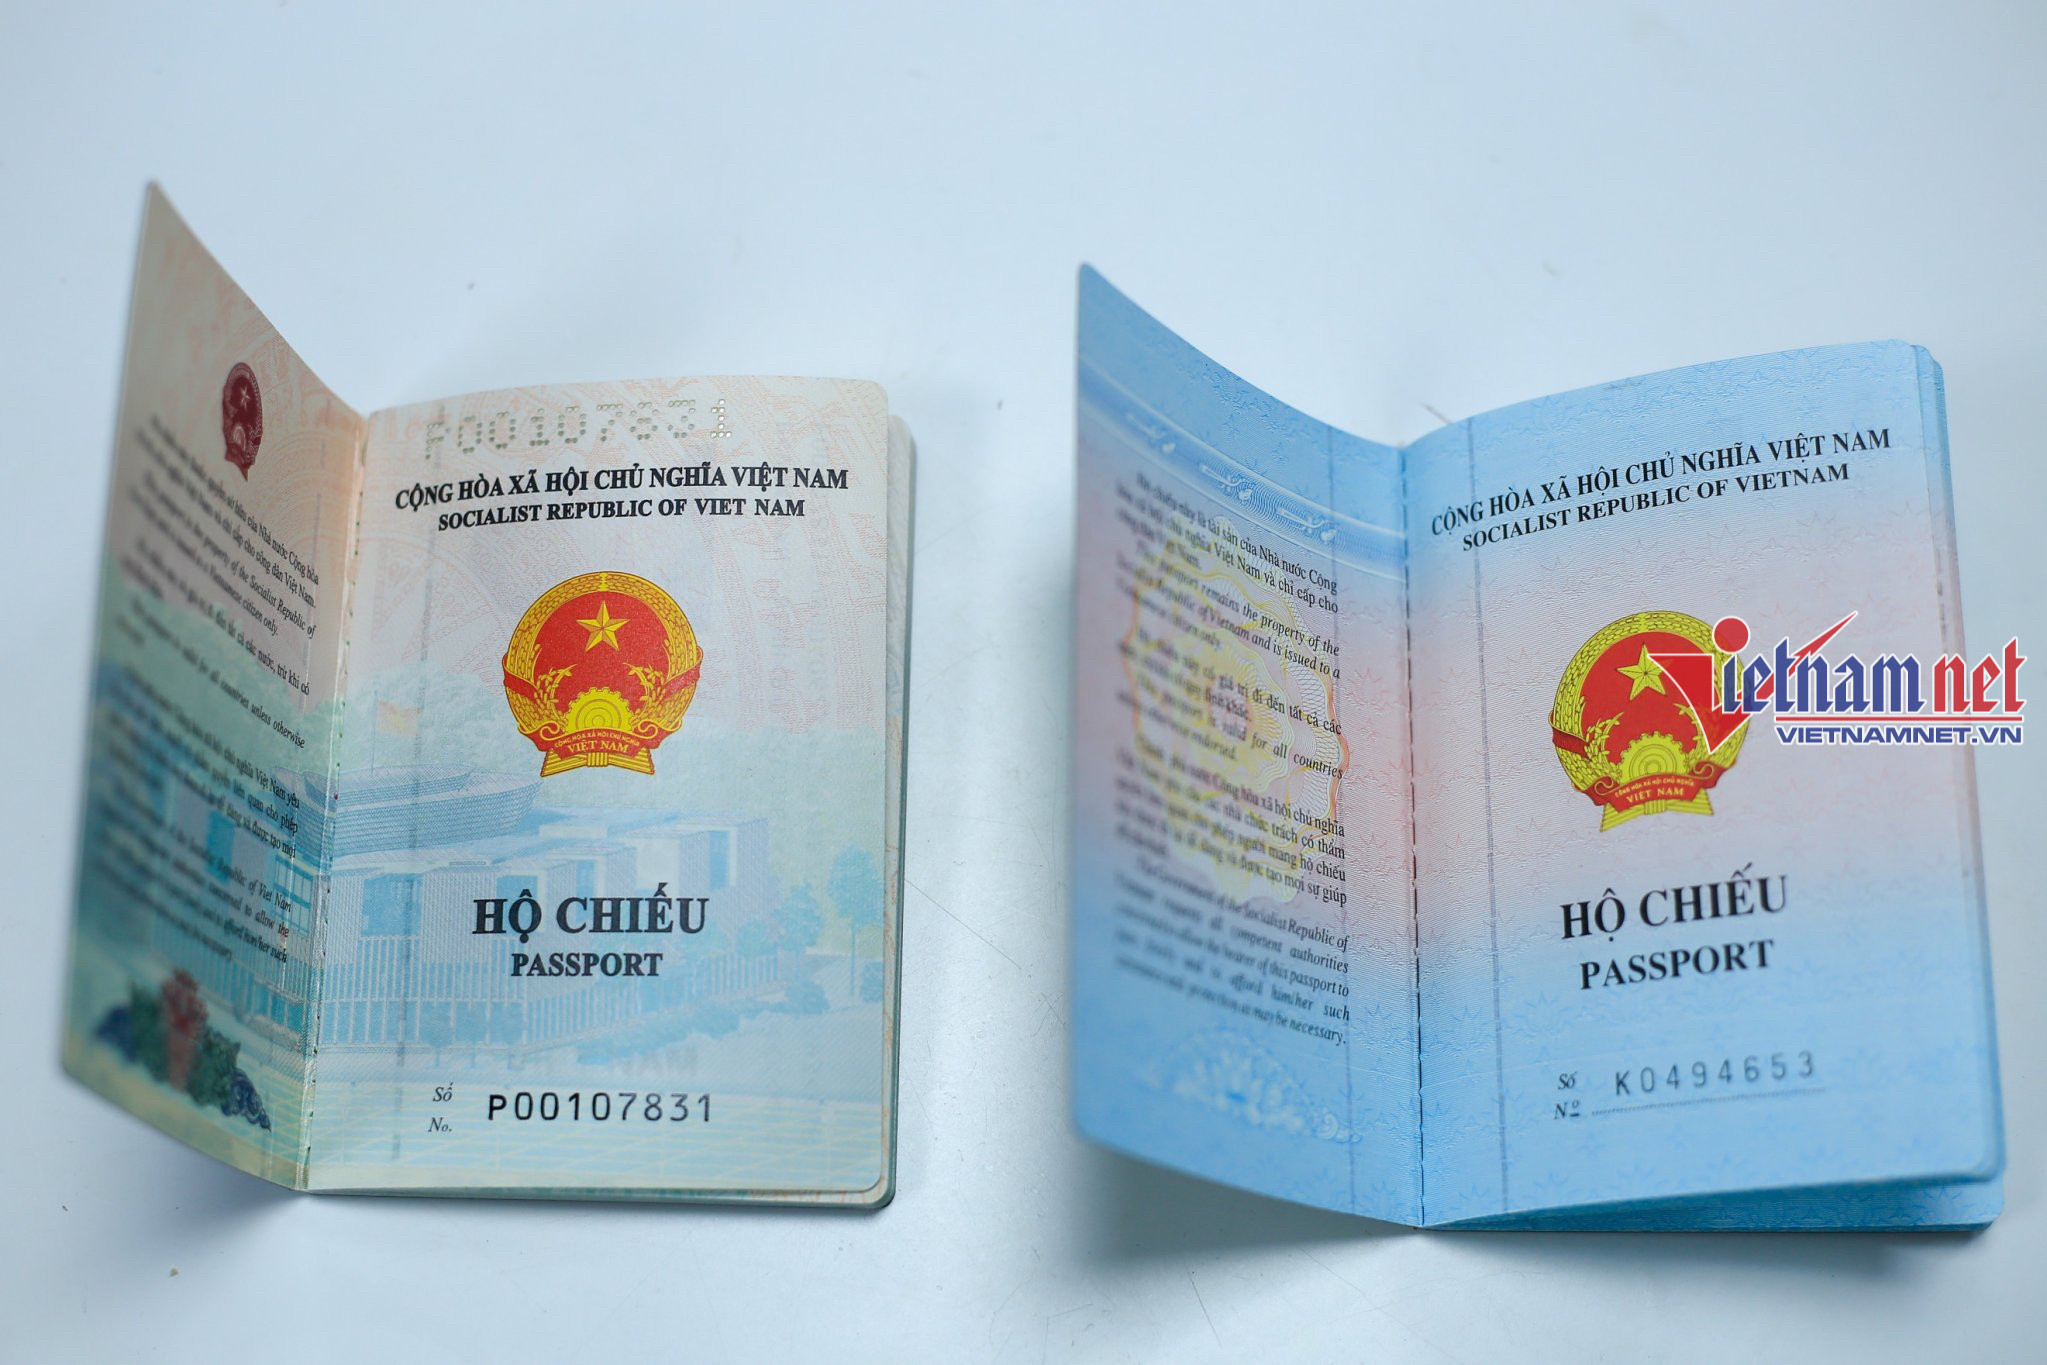 Đại sứ quán Việt Nam tại Séc ghi bị chú nơi sinh vào hộ chiếu mẫu mới